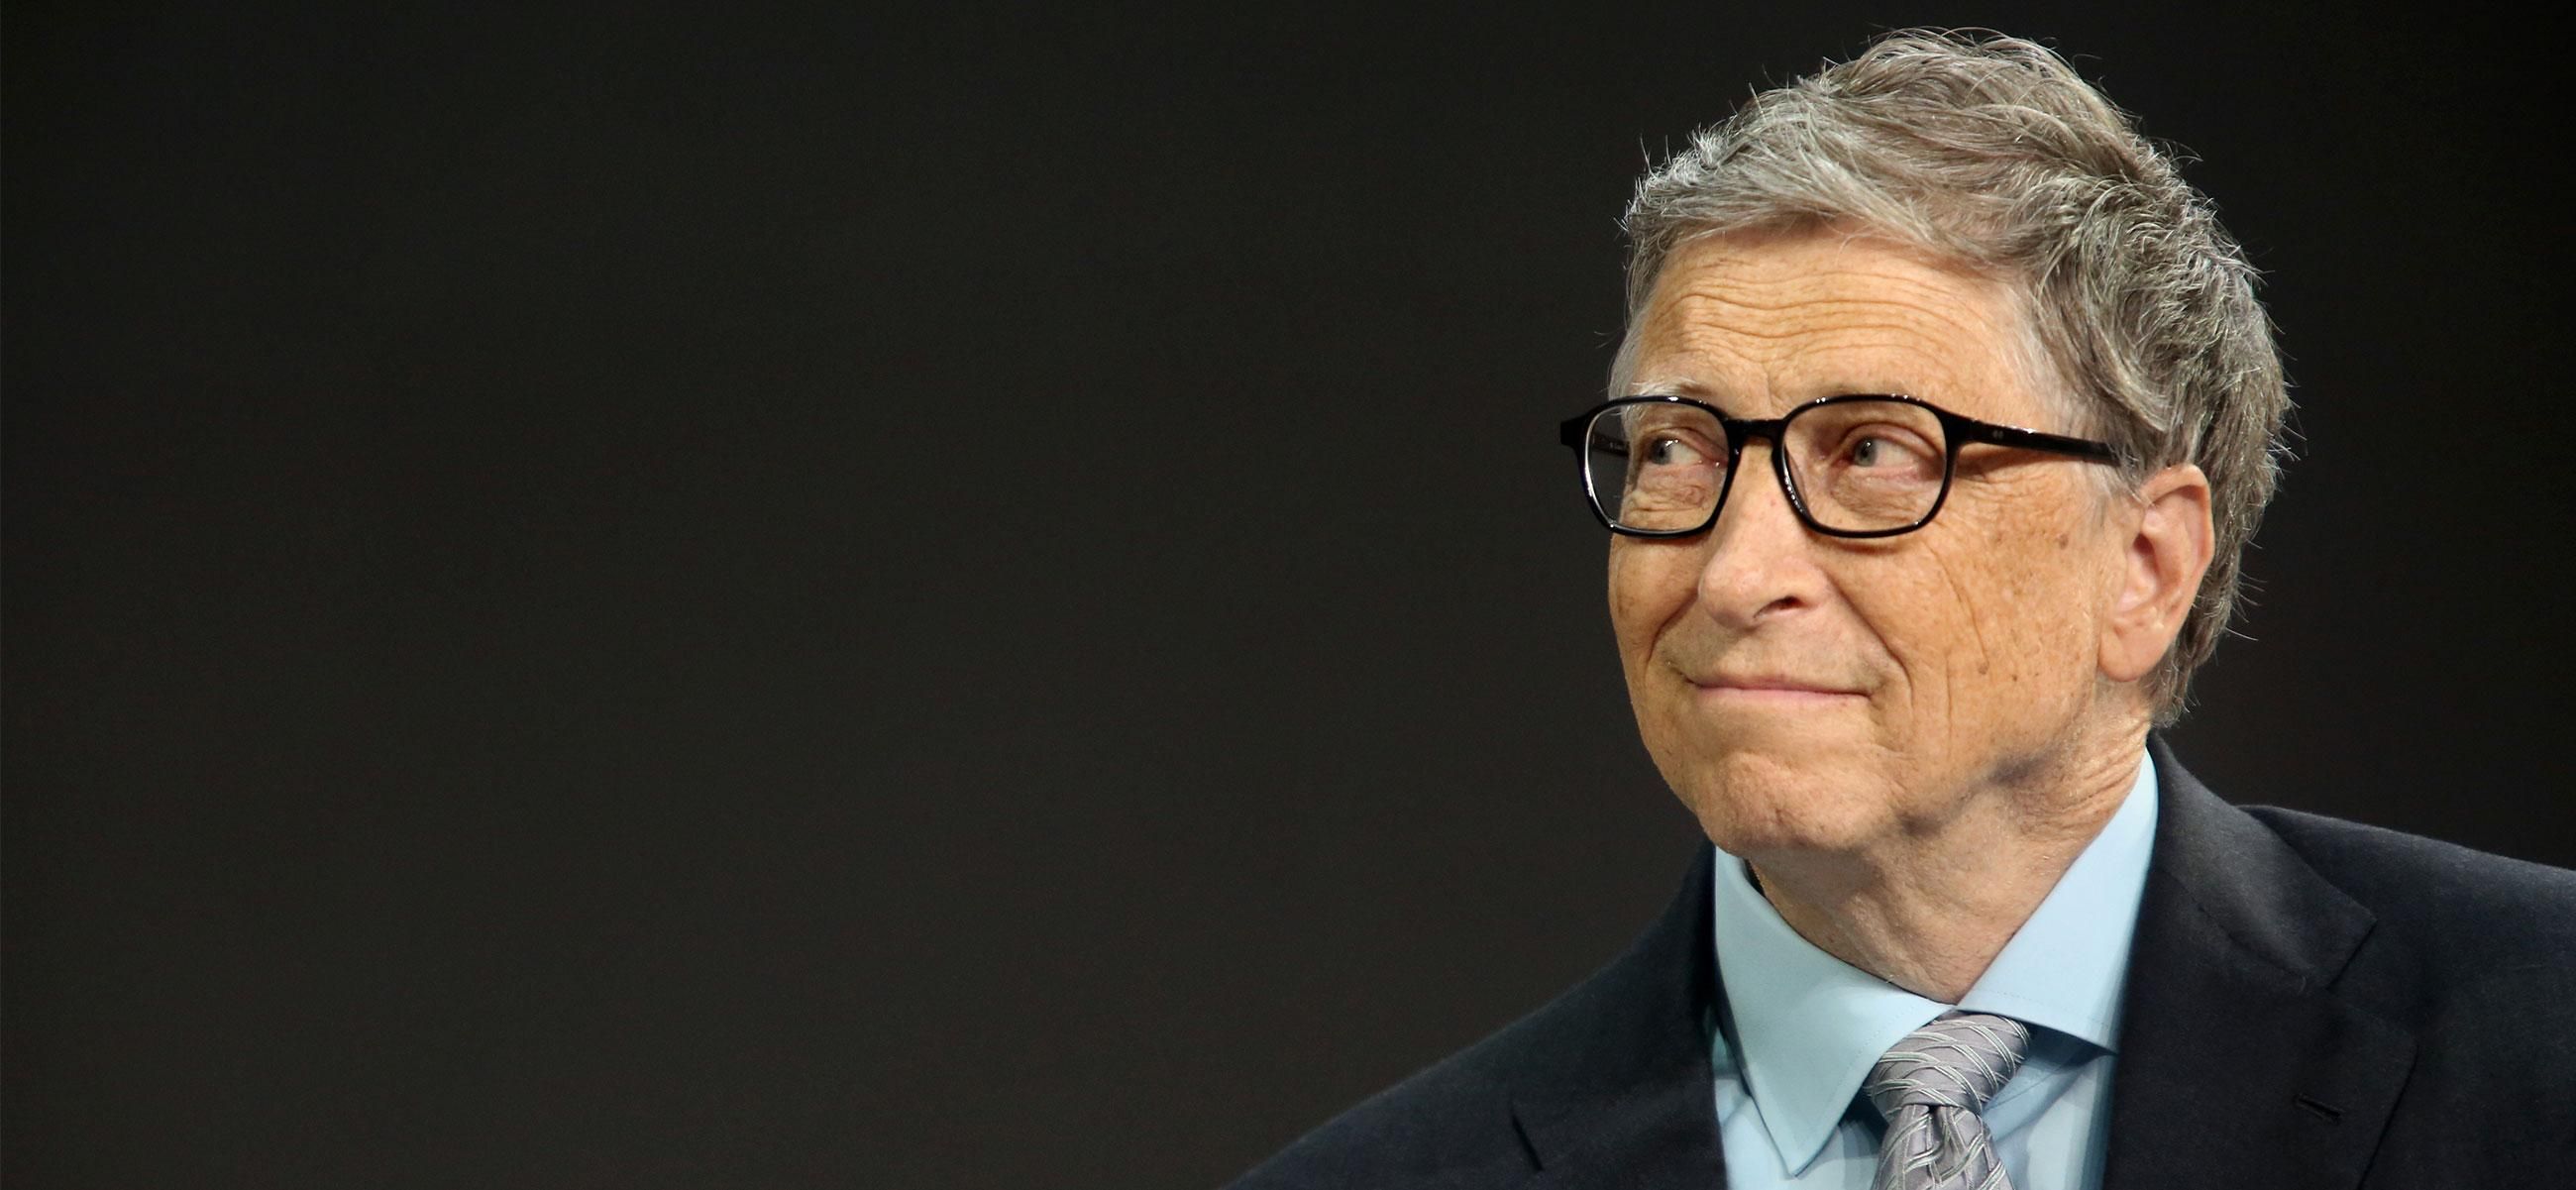 Билл Гейтс призвал решать земные проблемы, а не думать о космосе